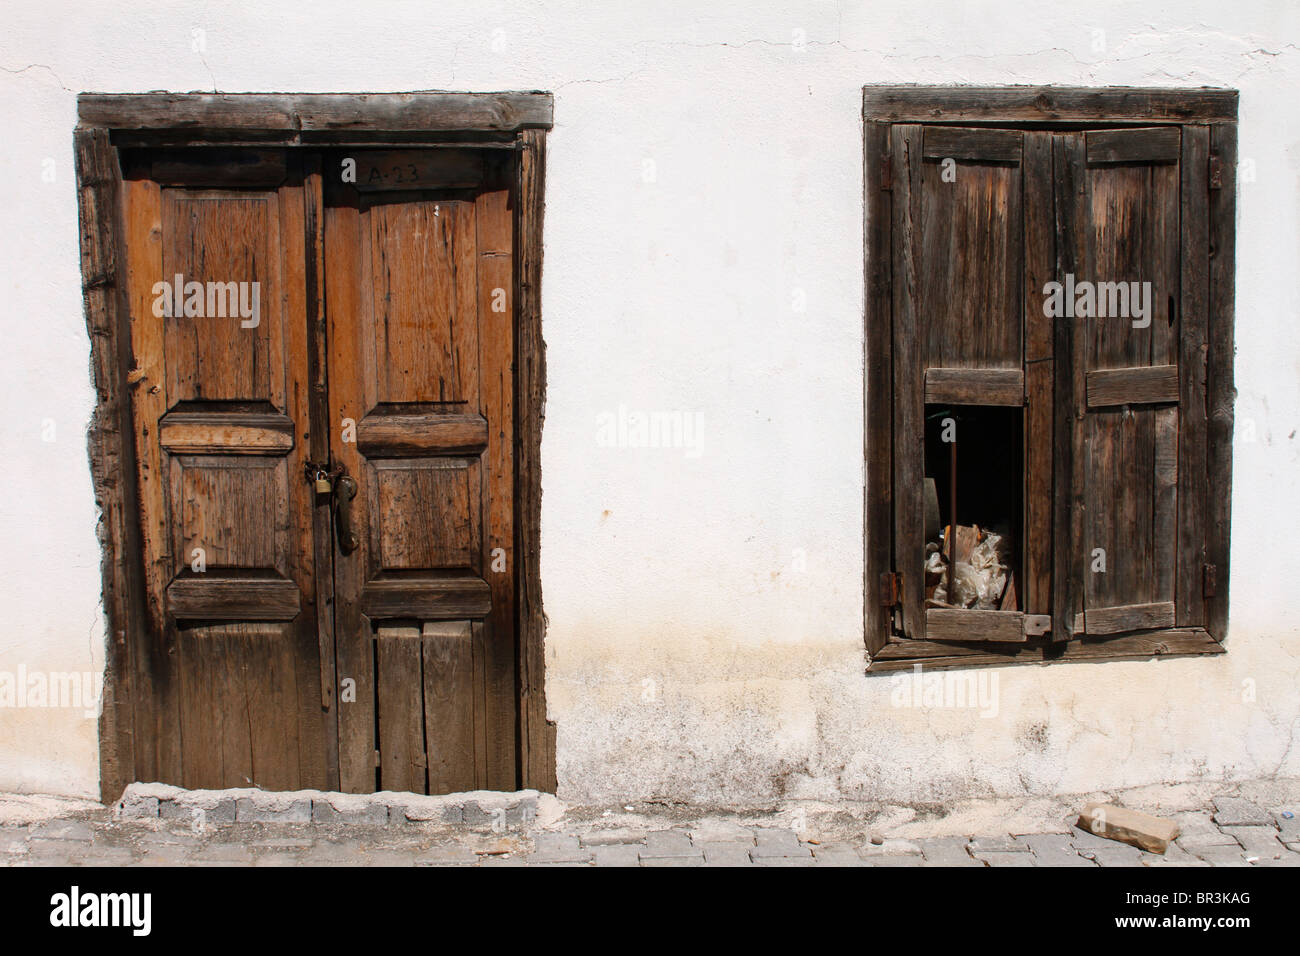 Old wooden door and shutters, Dirgenler, Turkey Stock Photo